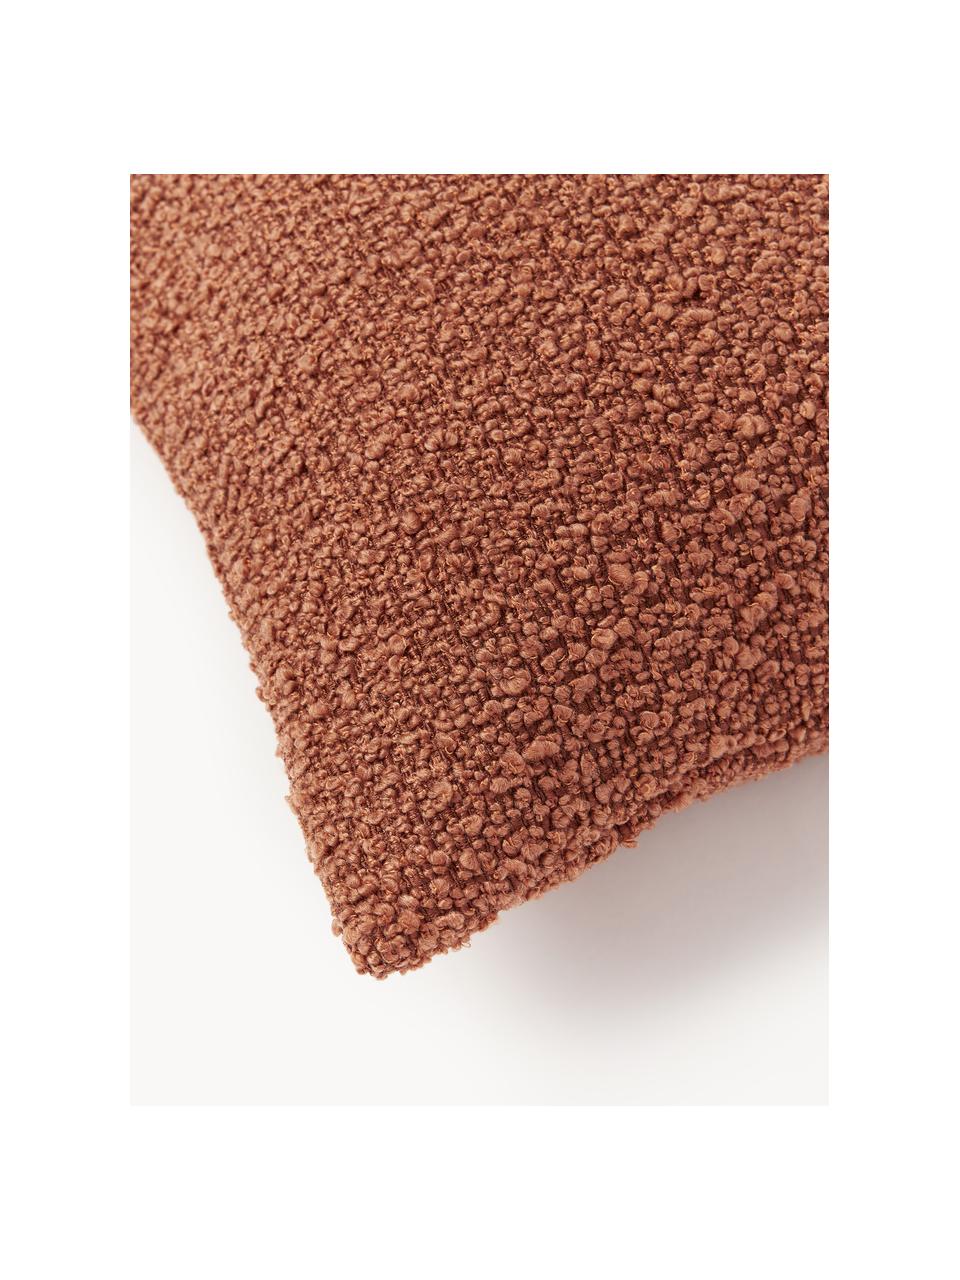 Perkalkatoenen dekbedovertrek Madeline, Bouclé (95% polyester, 5% polyacryl)

Bouclé is een materiaal dat zich kenmerkt door zijn onregelmatig gebogen structuur. Het karakteristieke oppervlak ontstaat door geweven lussen van verschillende garens, waardoor de stof een unieke structuur krijgt. De lusstructuur heeft een isolerende en tegelijkertijd donzige werking, waardoor de stof bijzonder knuffelig is., Bouclé terracotta, B 45 x L 45 cm, 2 stuks